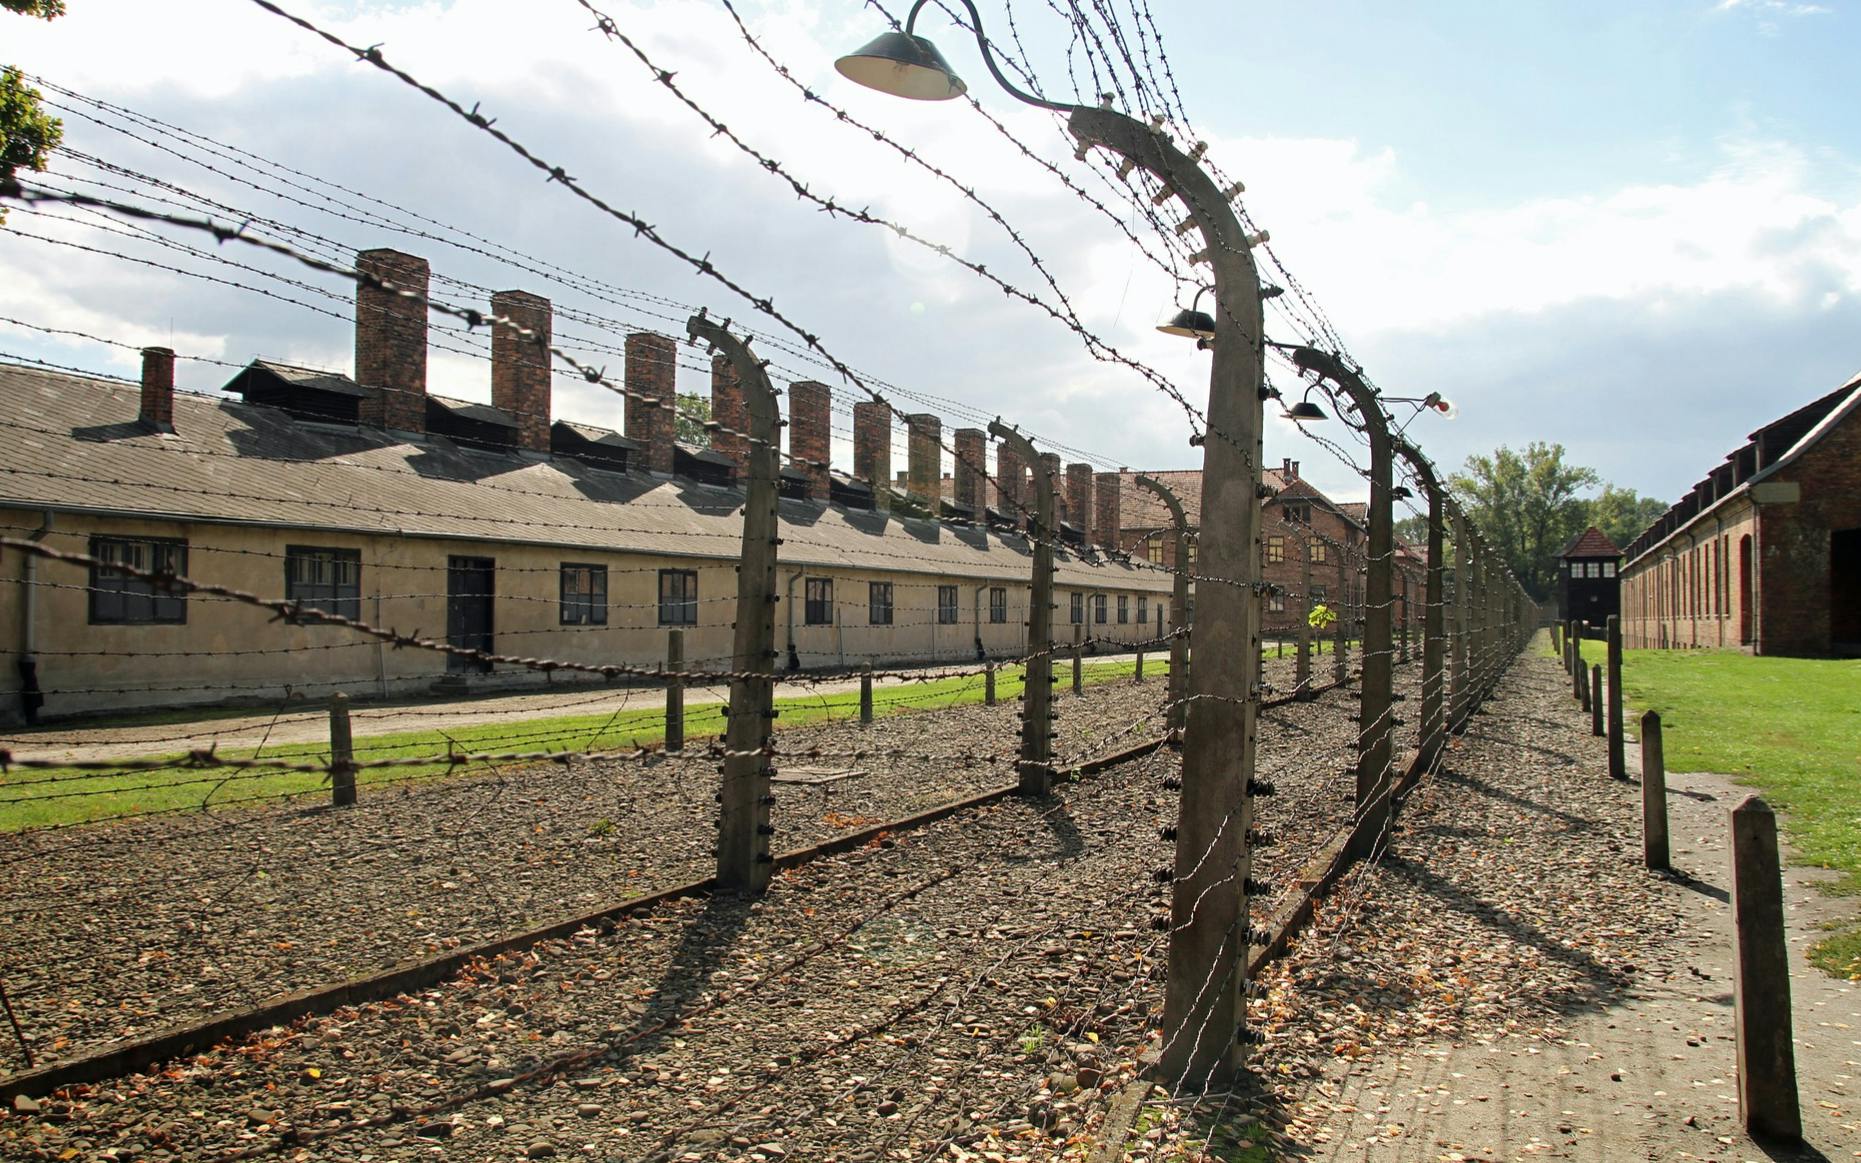 Ingresso sem filas em Auschwitz-Birkenau e visita oficial com guia